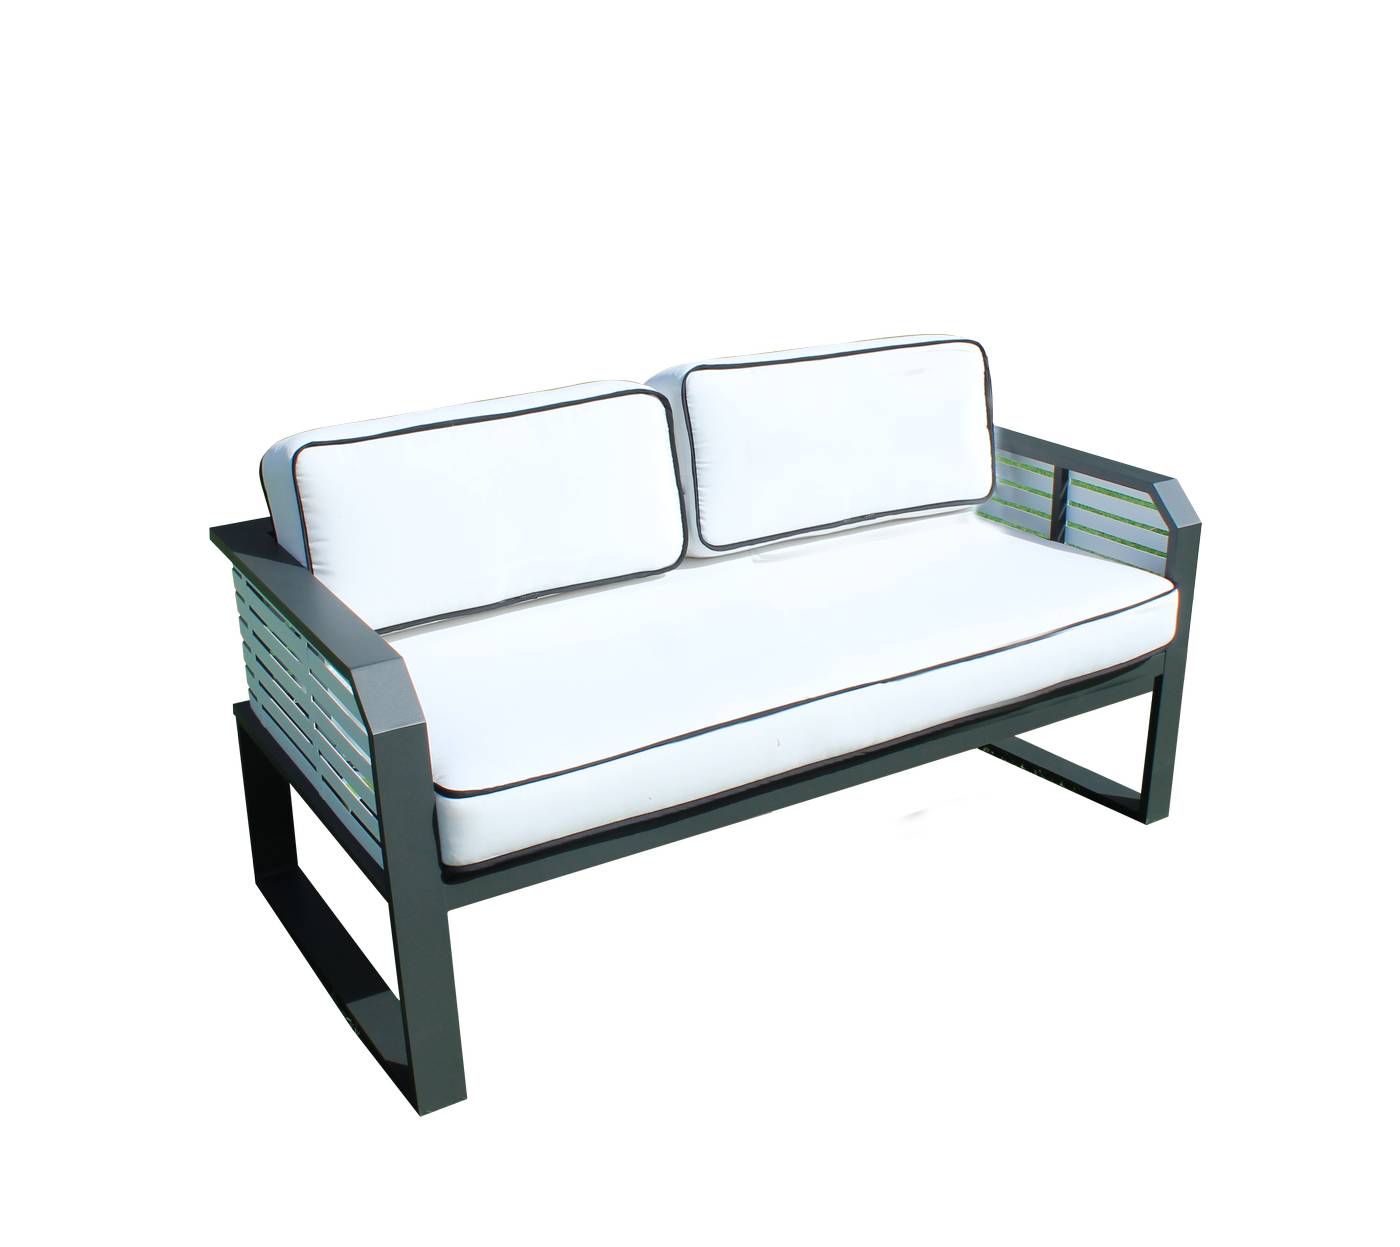 Set Aluminio Sira-9 - Coqueto conjunto de alumnio bicolor: 1 sofá de 2 plazas + 2 sillones + 2 reposapiés + 1 mesa de centro.